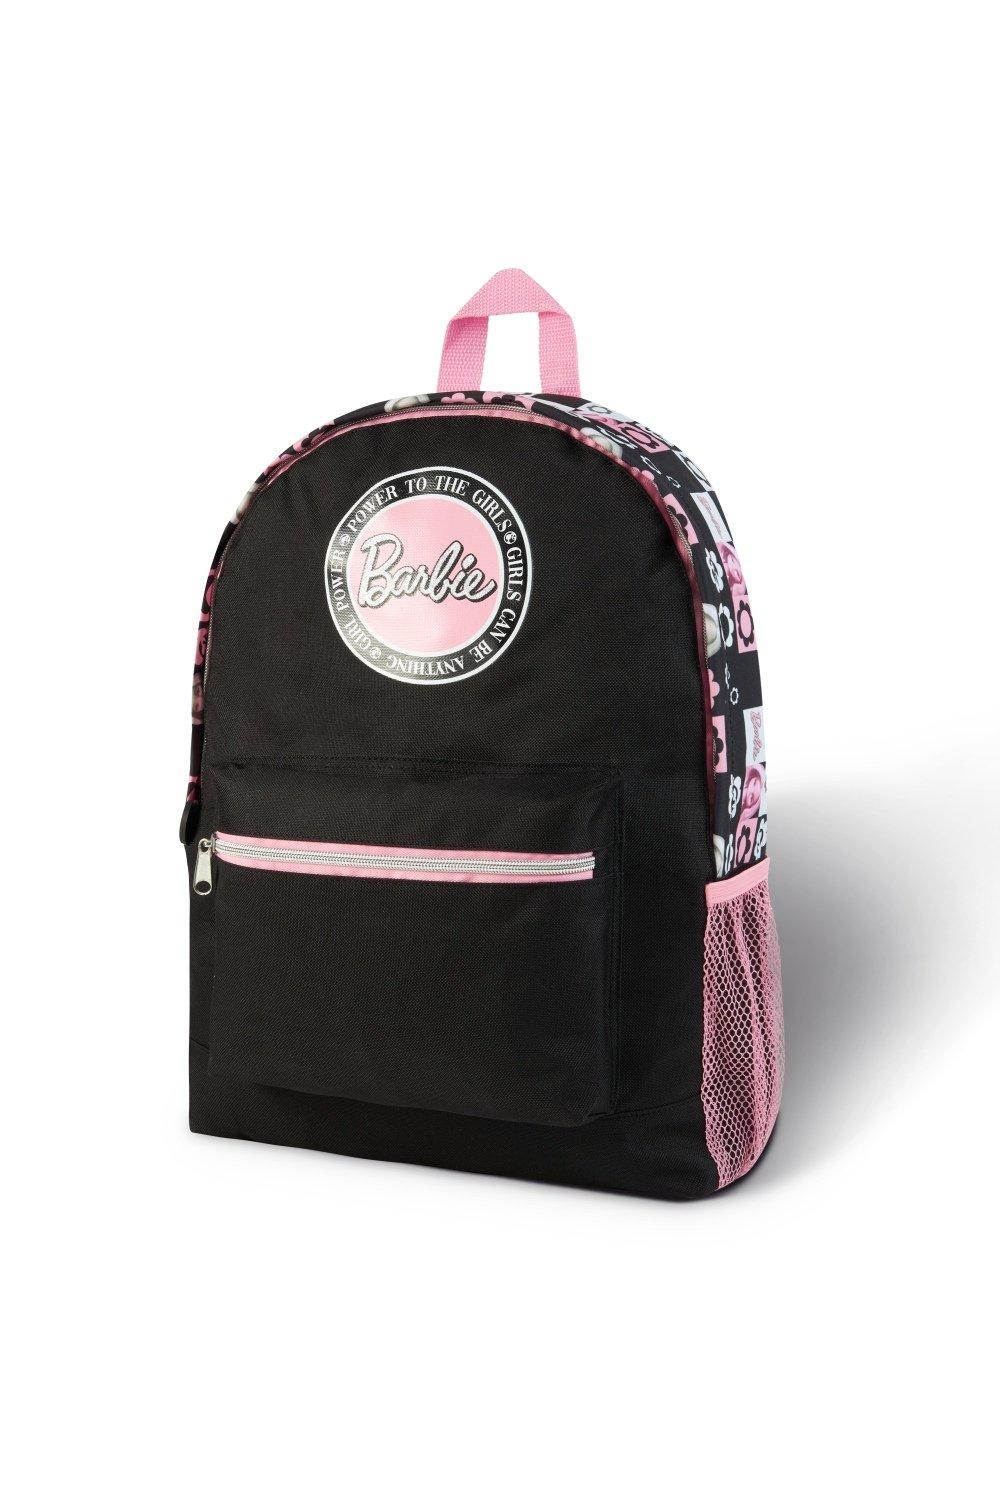 Школьная сумка Barbie, мультиколор рюкзак школьный с цветочной вышивкой для девочек повседневный рюкзак